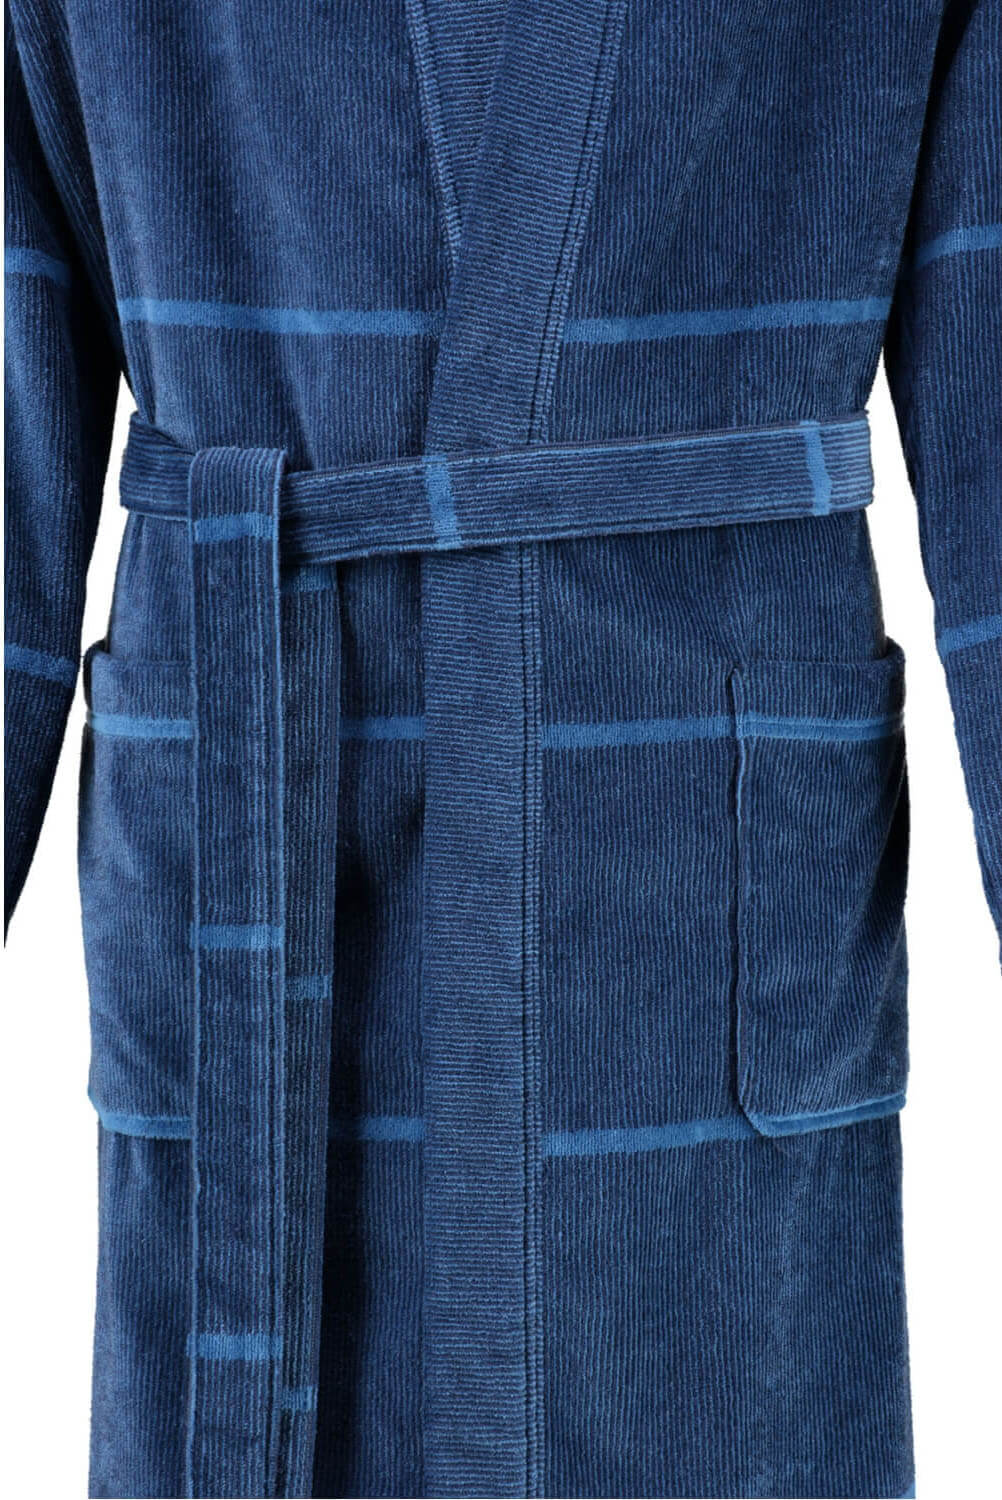 Мужской халат Cawo Kimono Blau ☞ Размер: 48